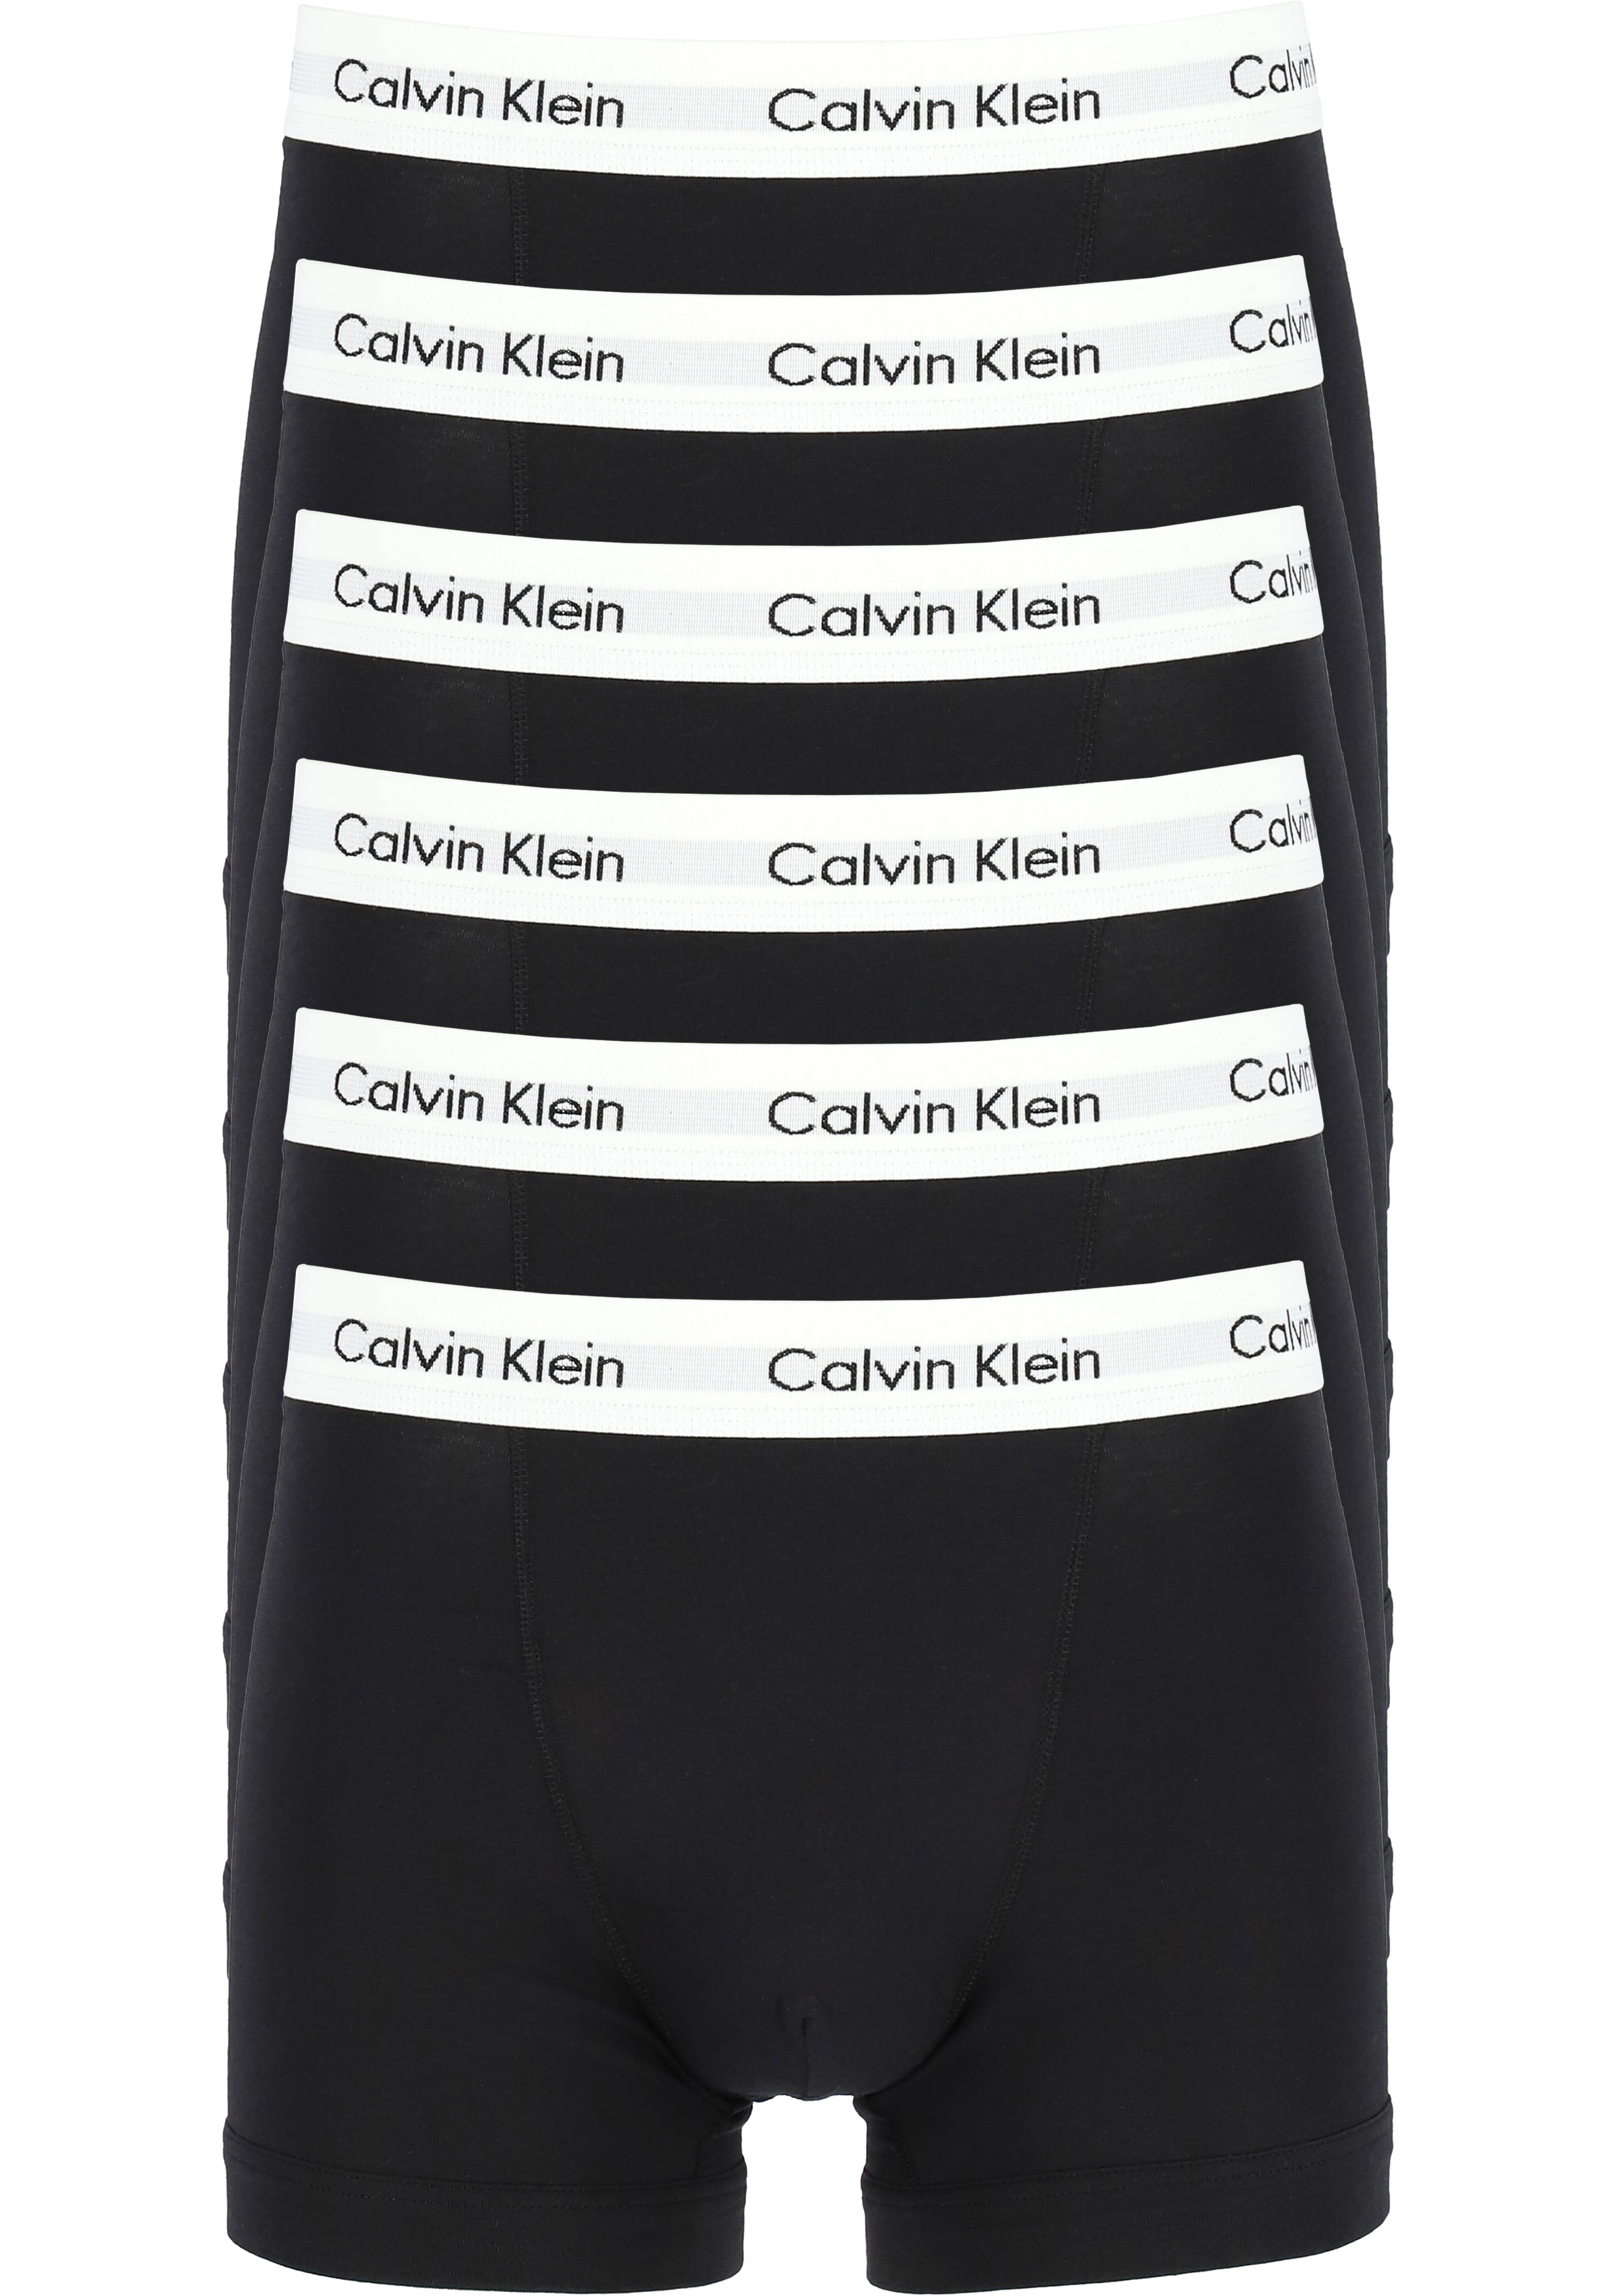 Bewustzijn JEP mooi zo Actie 6-pack: Calvin Klein trunks, heren boxers normale lengte, zwart -  Shop de nieuwste voorjaarsmode